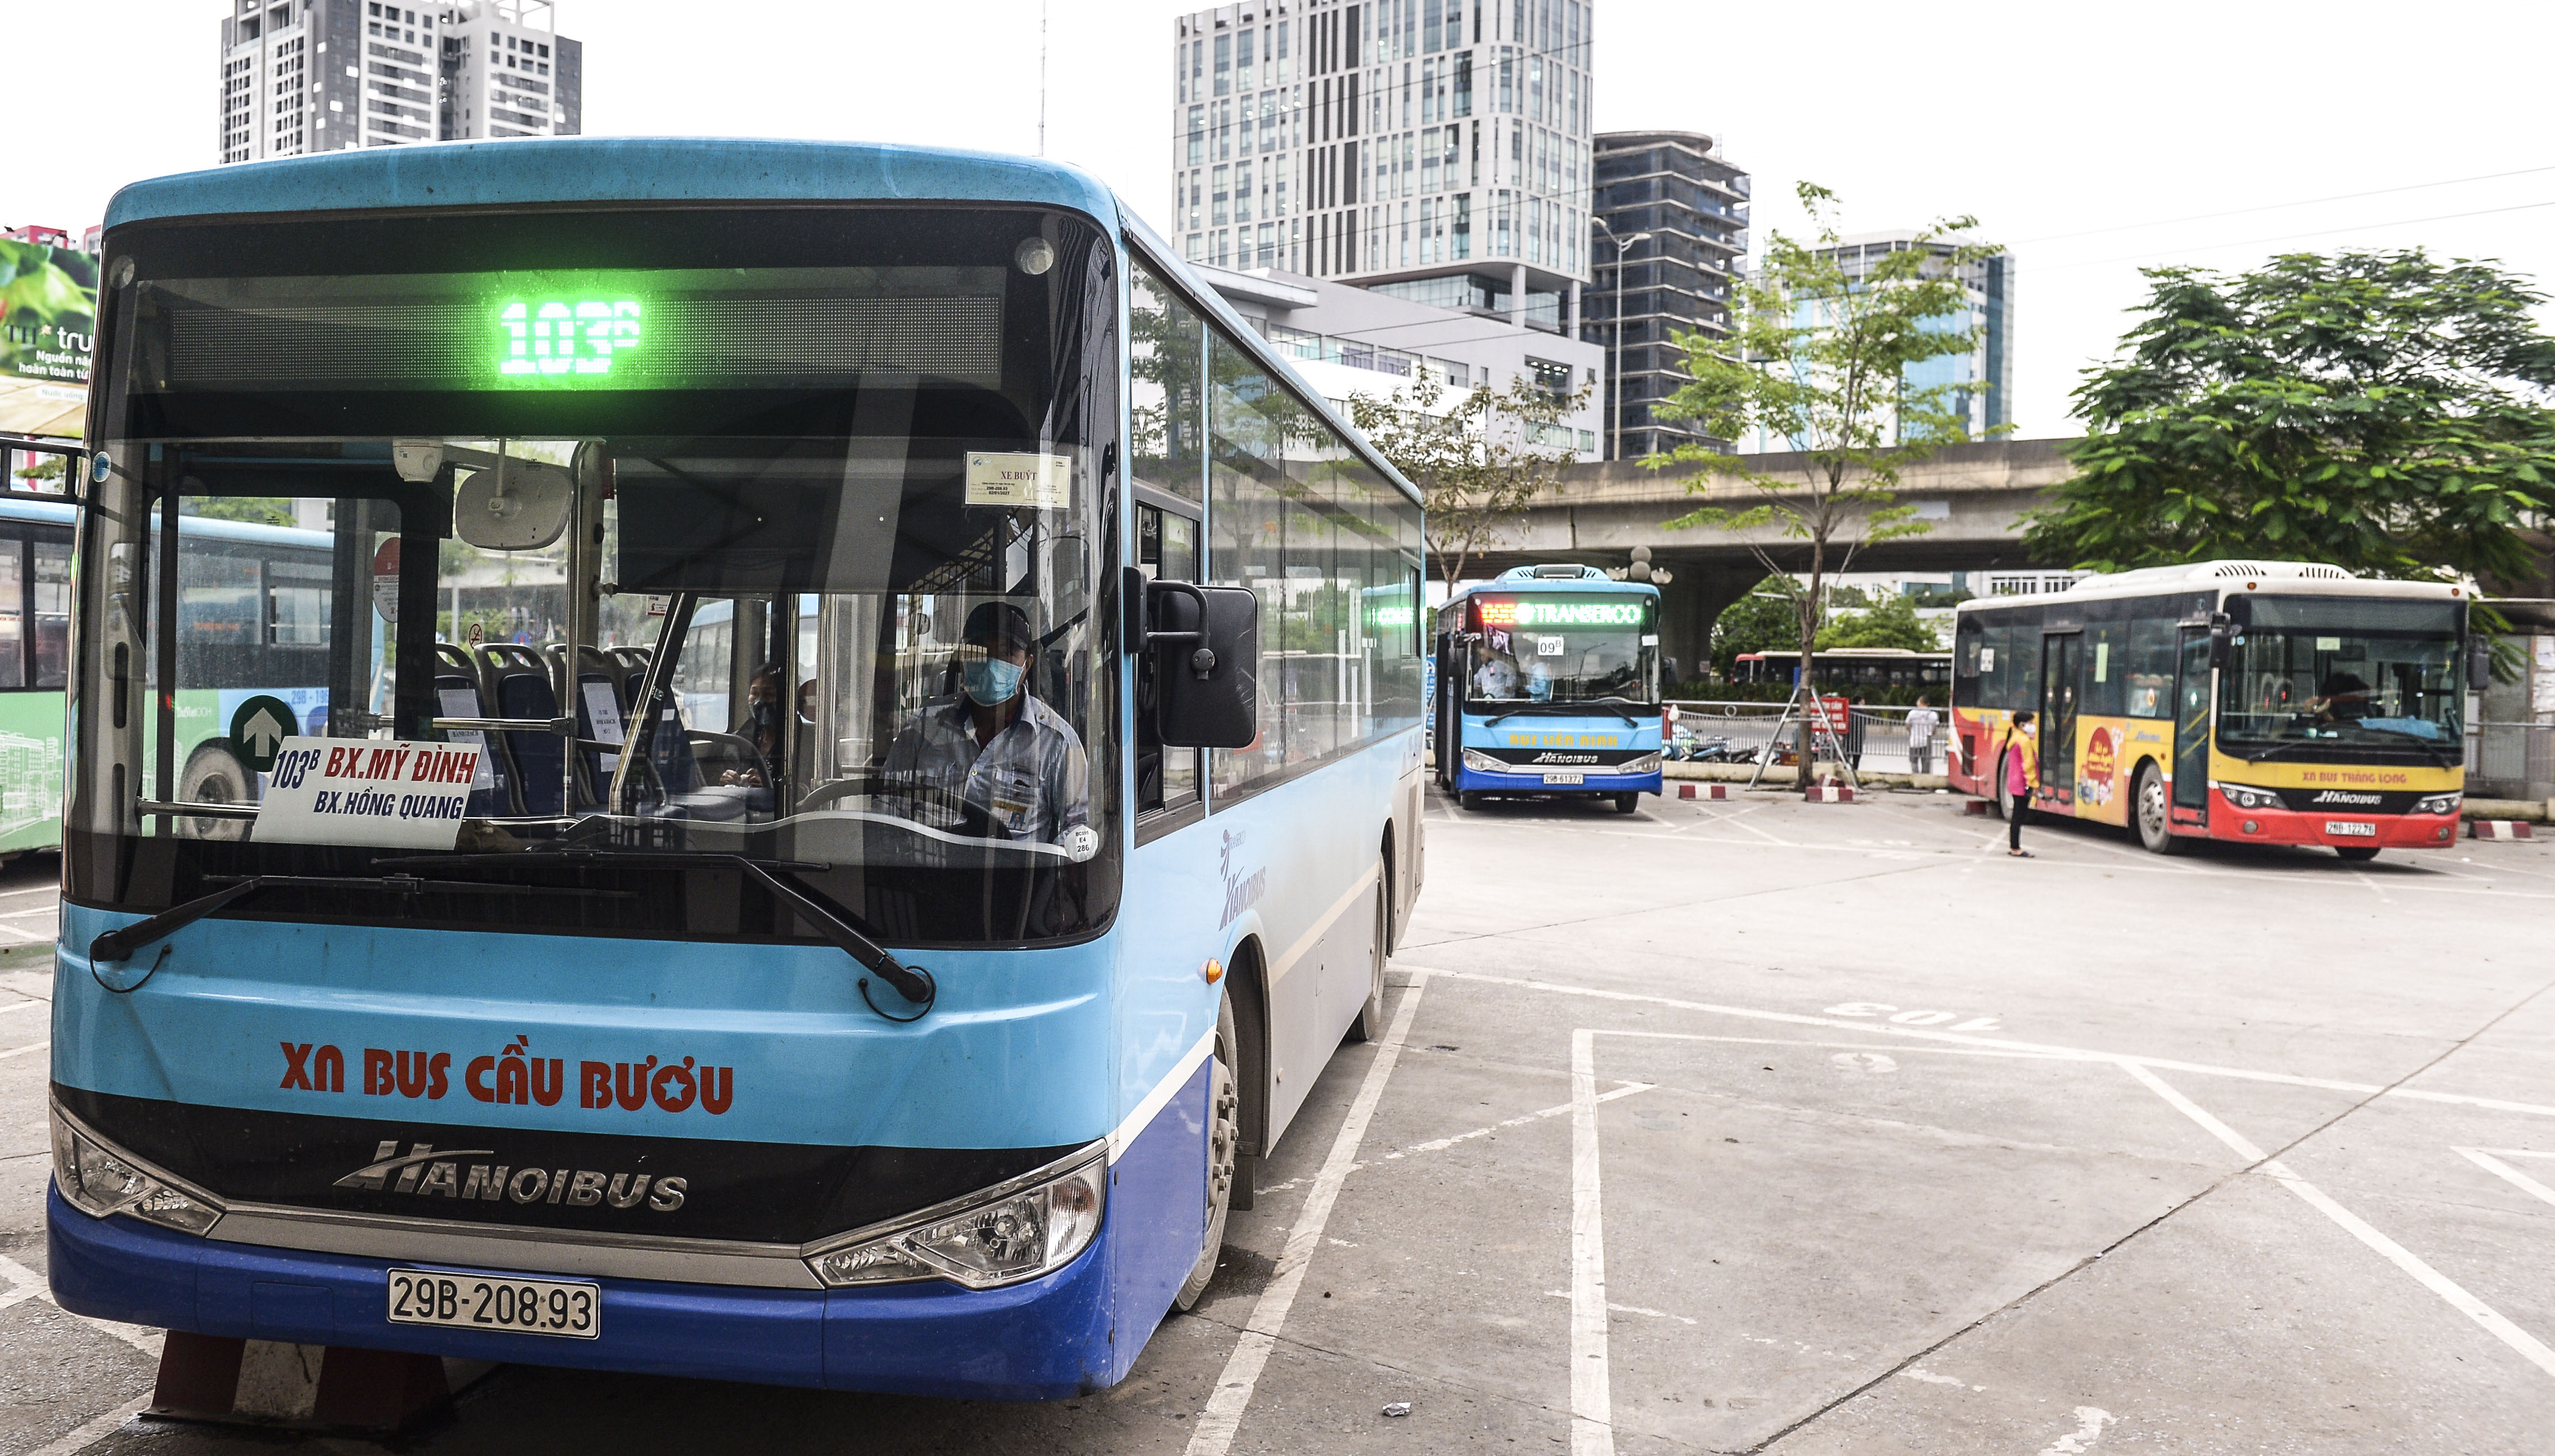 Xe buýt Hà Nội đánh số ghế so le để hành khách ngồi đúng khoảng cách ...